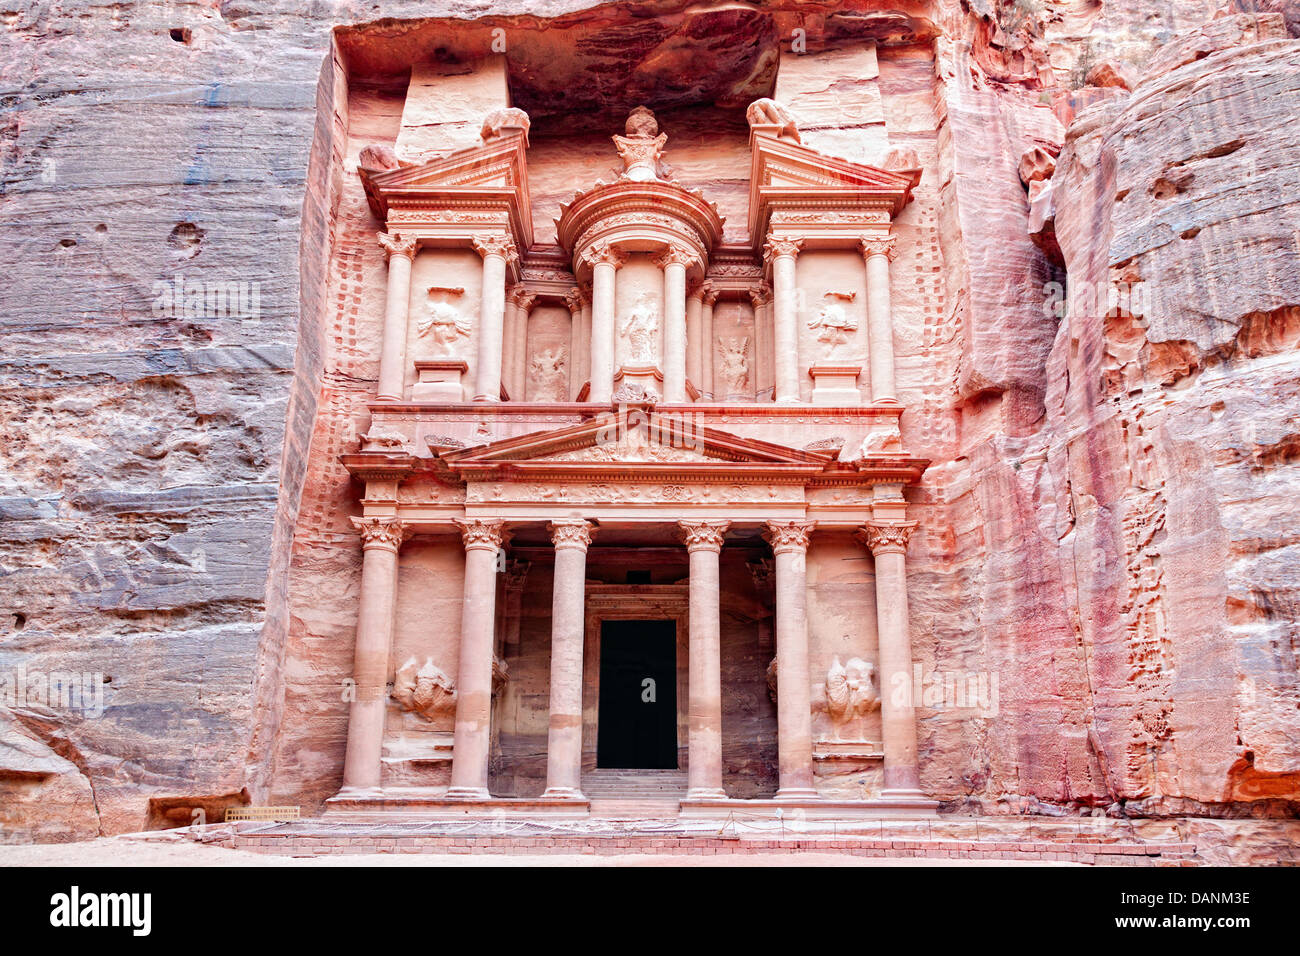 Al Khazneh or Treasury in Petra, Jordan Stock Photo